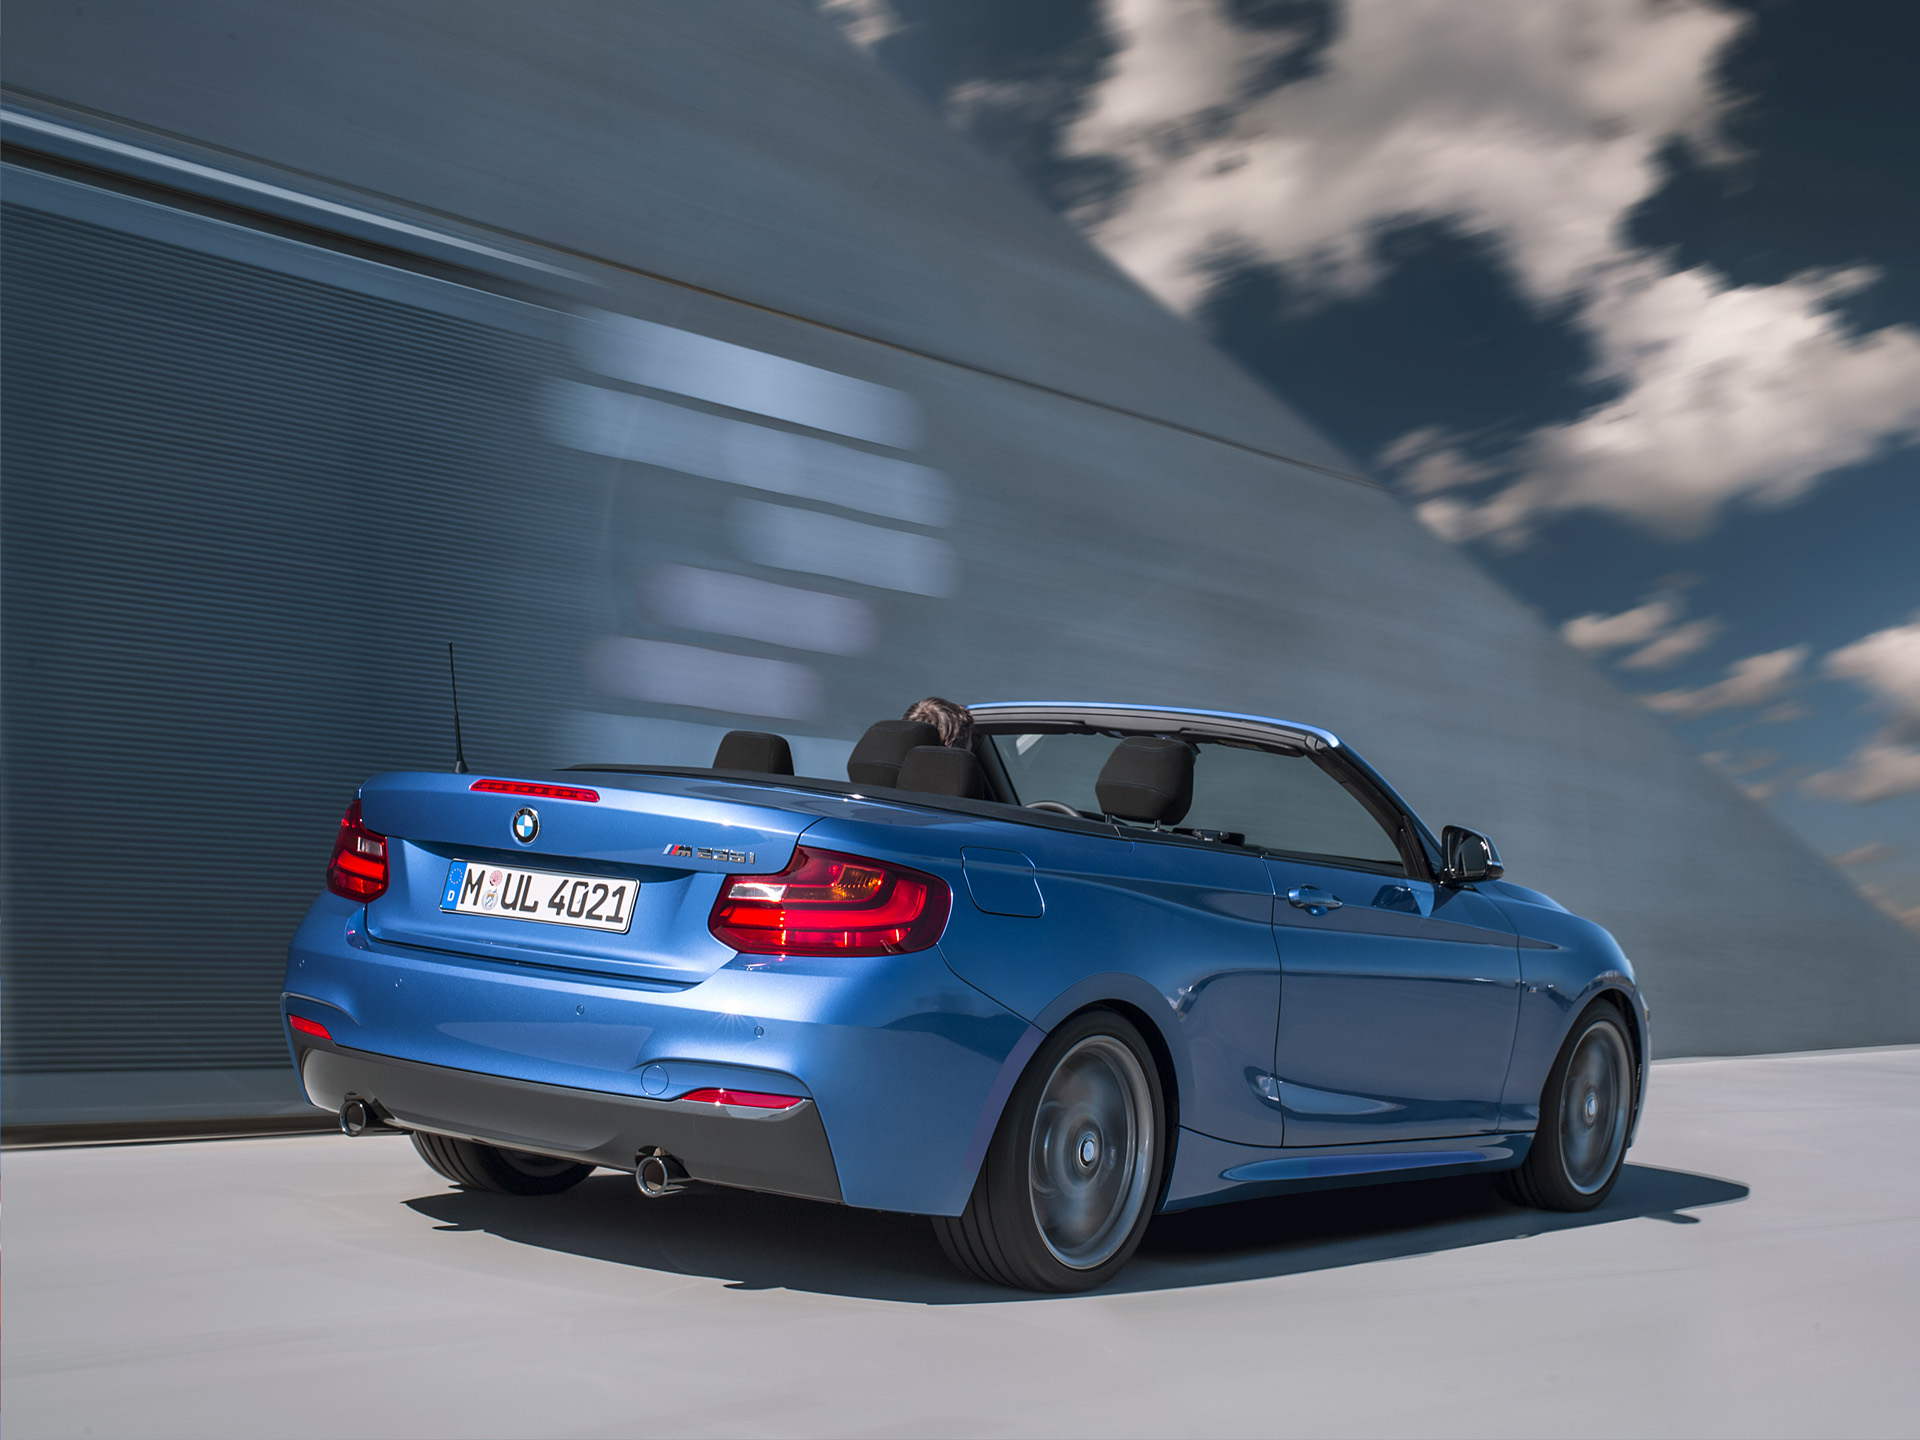  2015 BMW M235i Convertible Wallpaper.